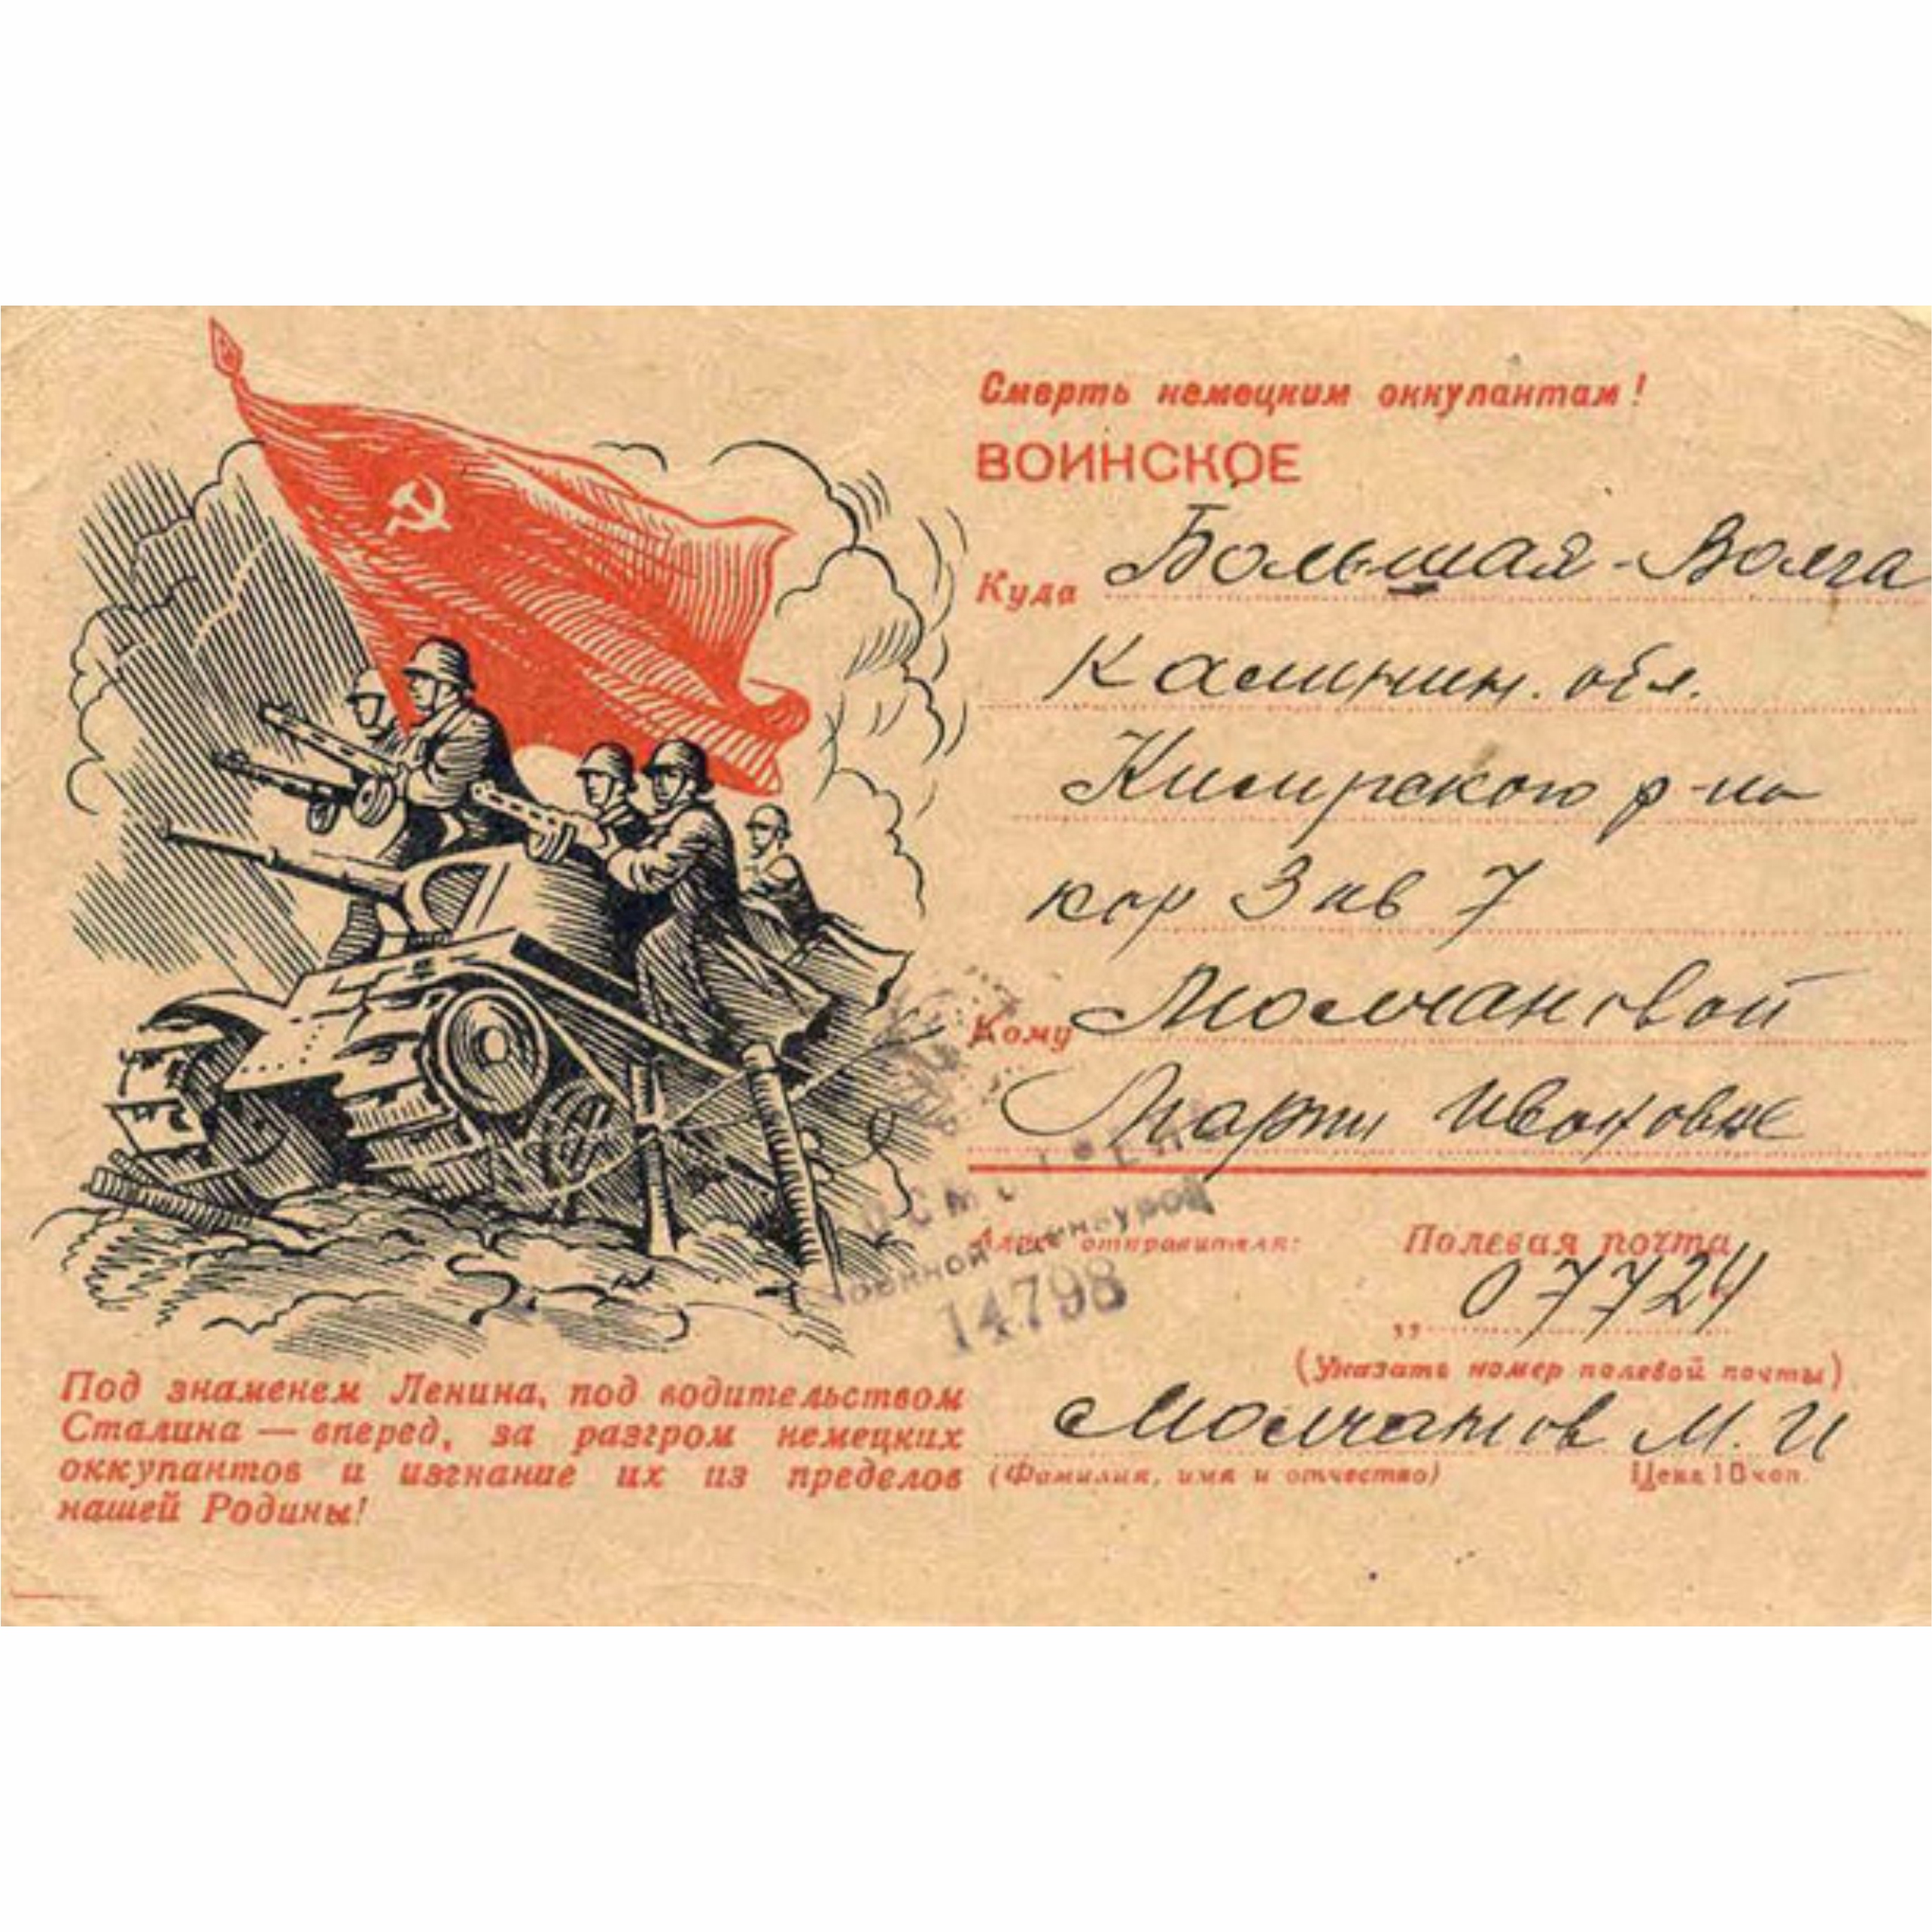 открытки Великой Отечественной войны